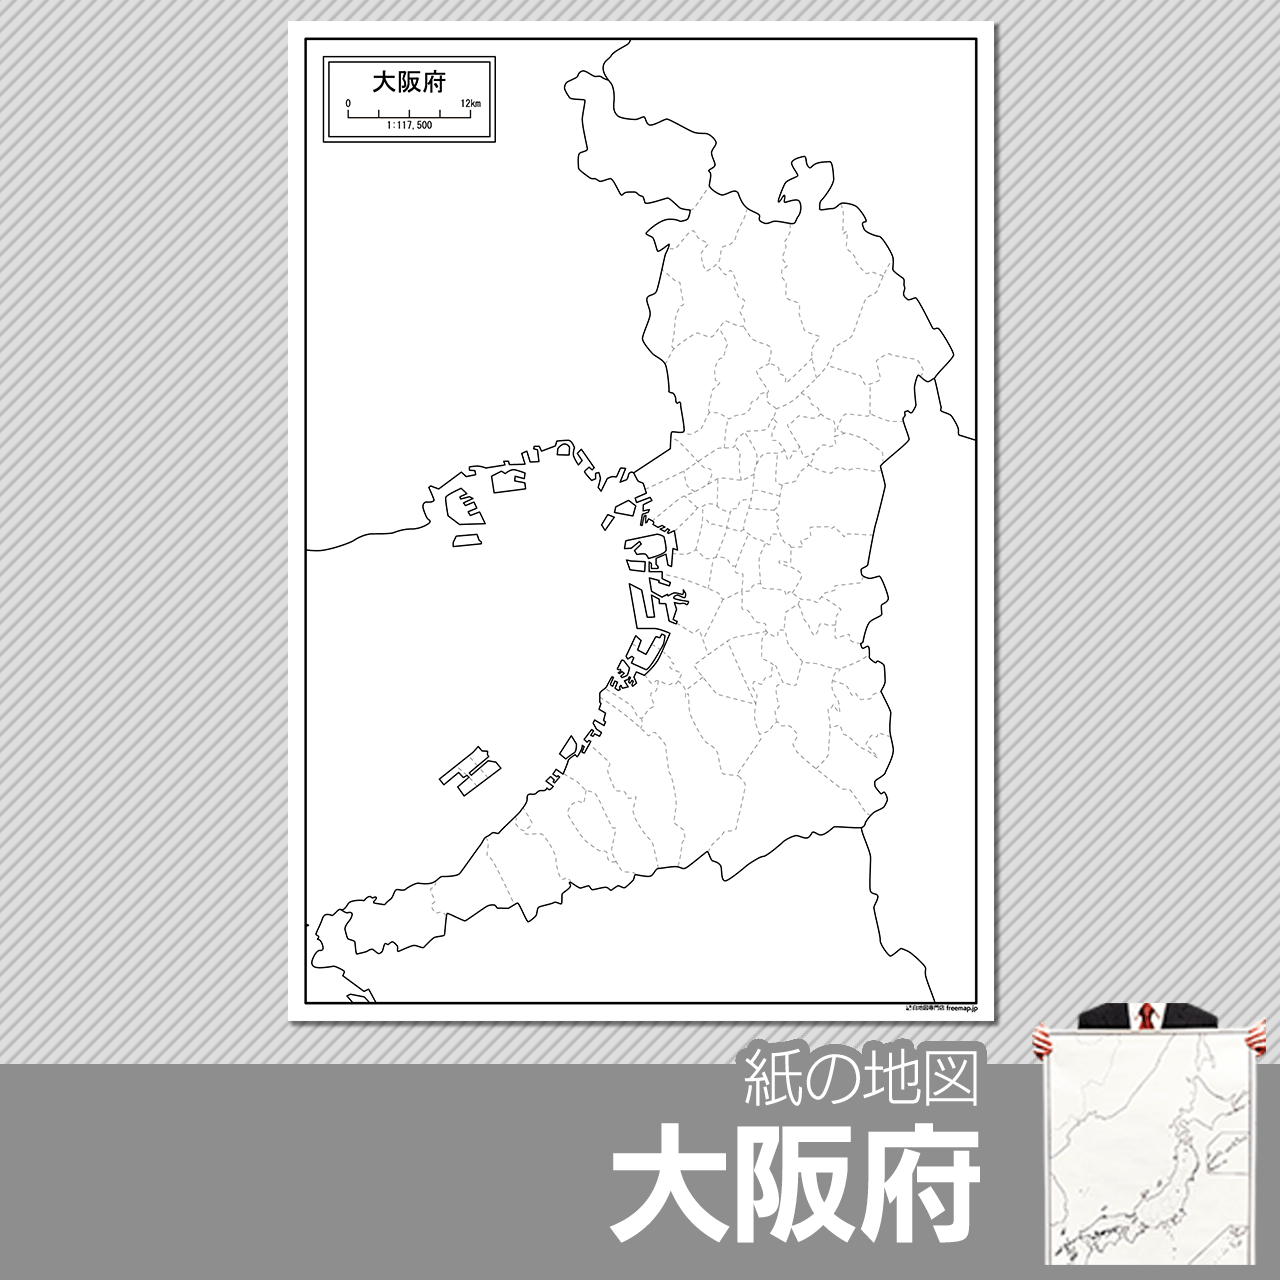 大阪府の紙の白地図のサムネイル